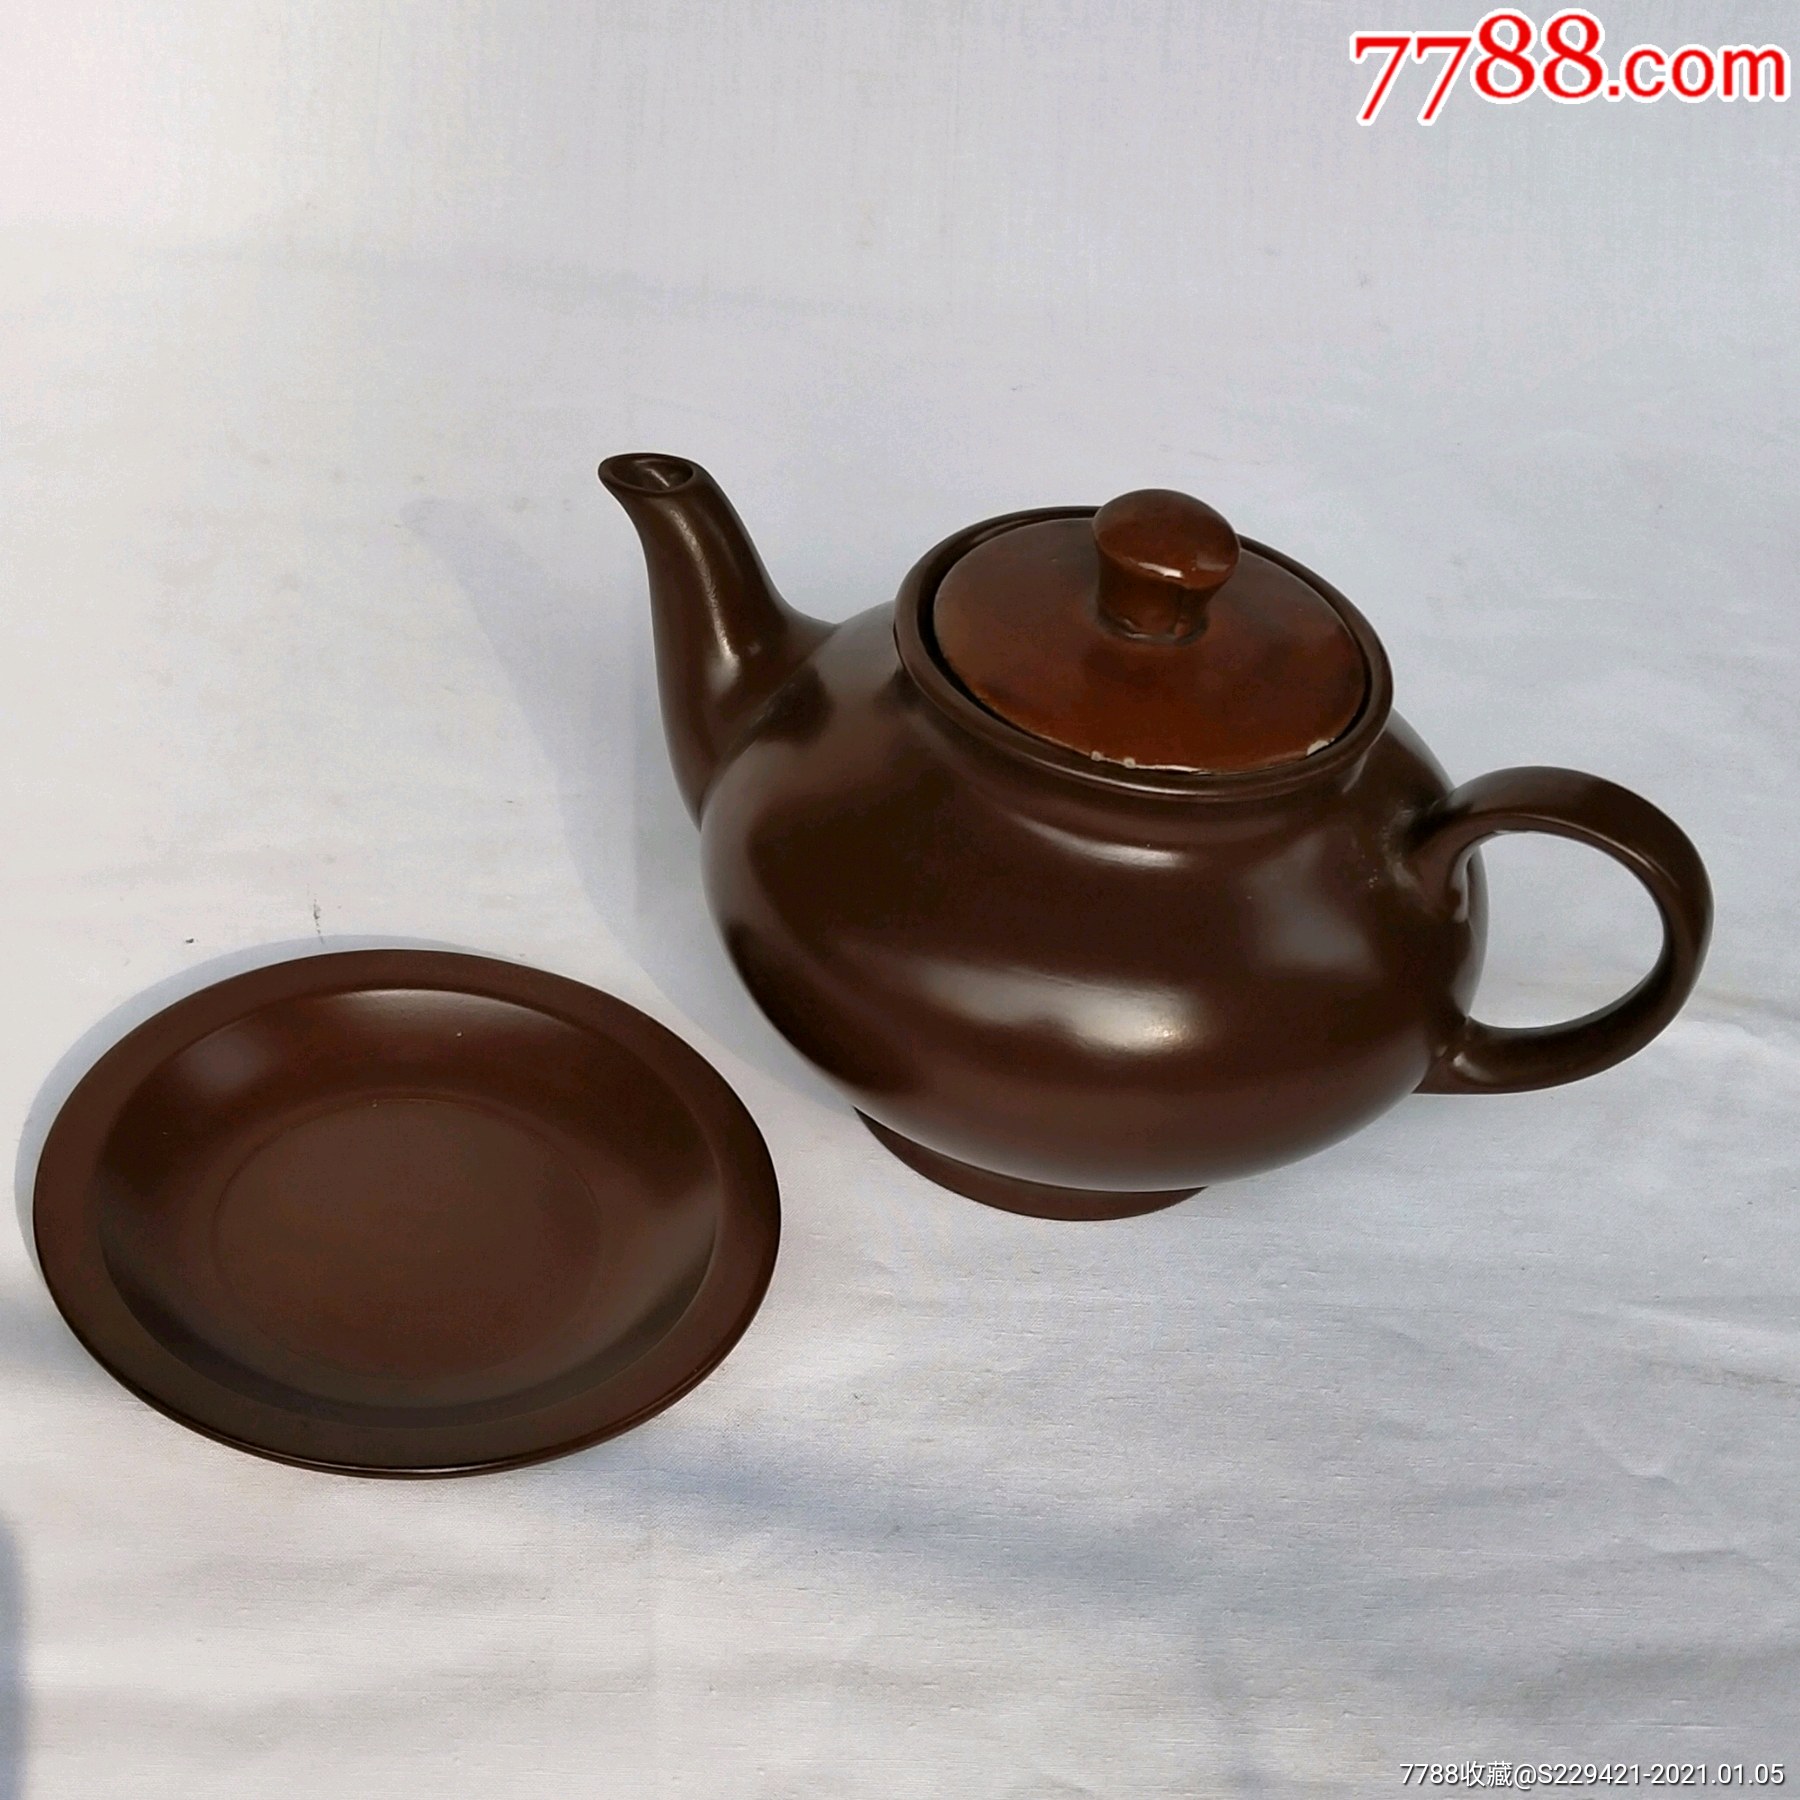 780年代奎山牌紫砂壶碟文房茶具套装配件实用收藏品正品